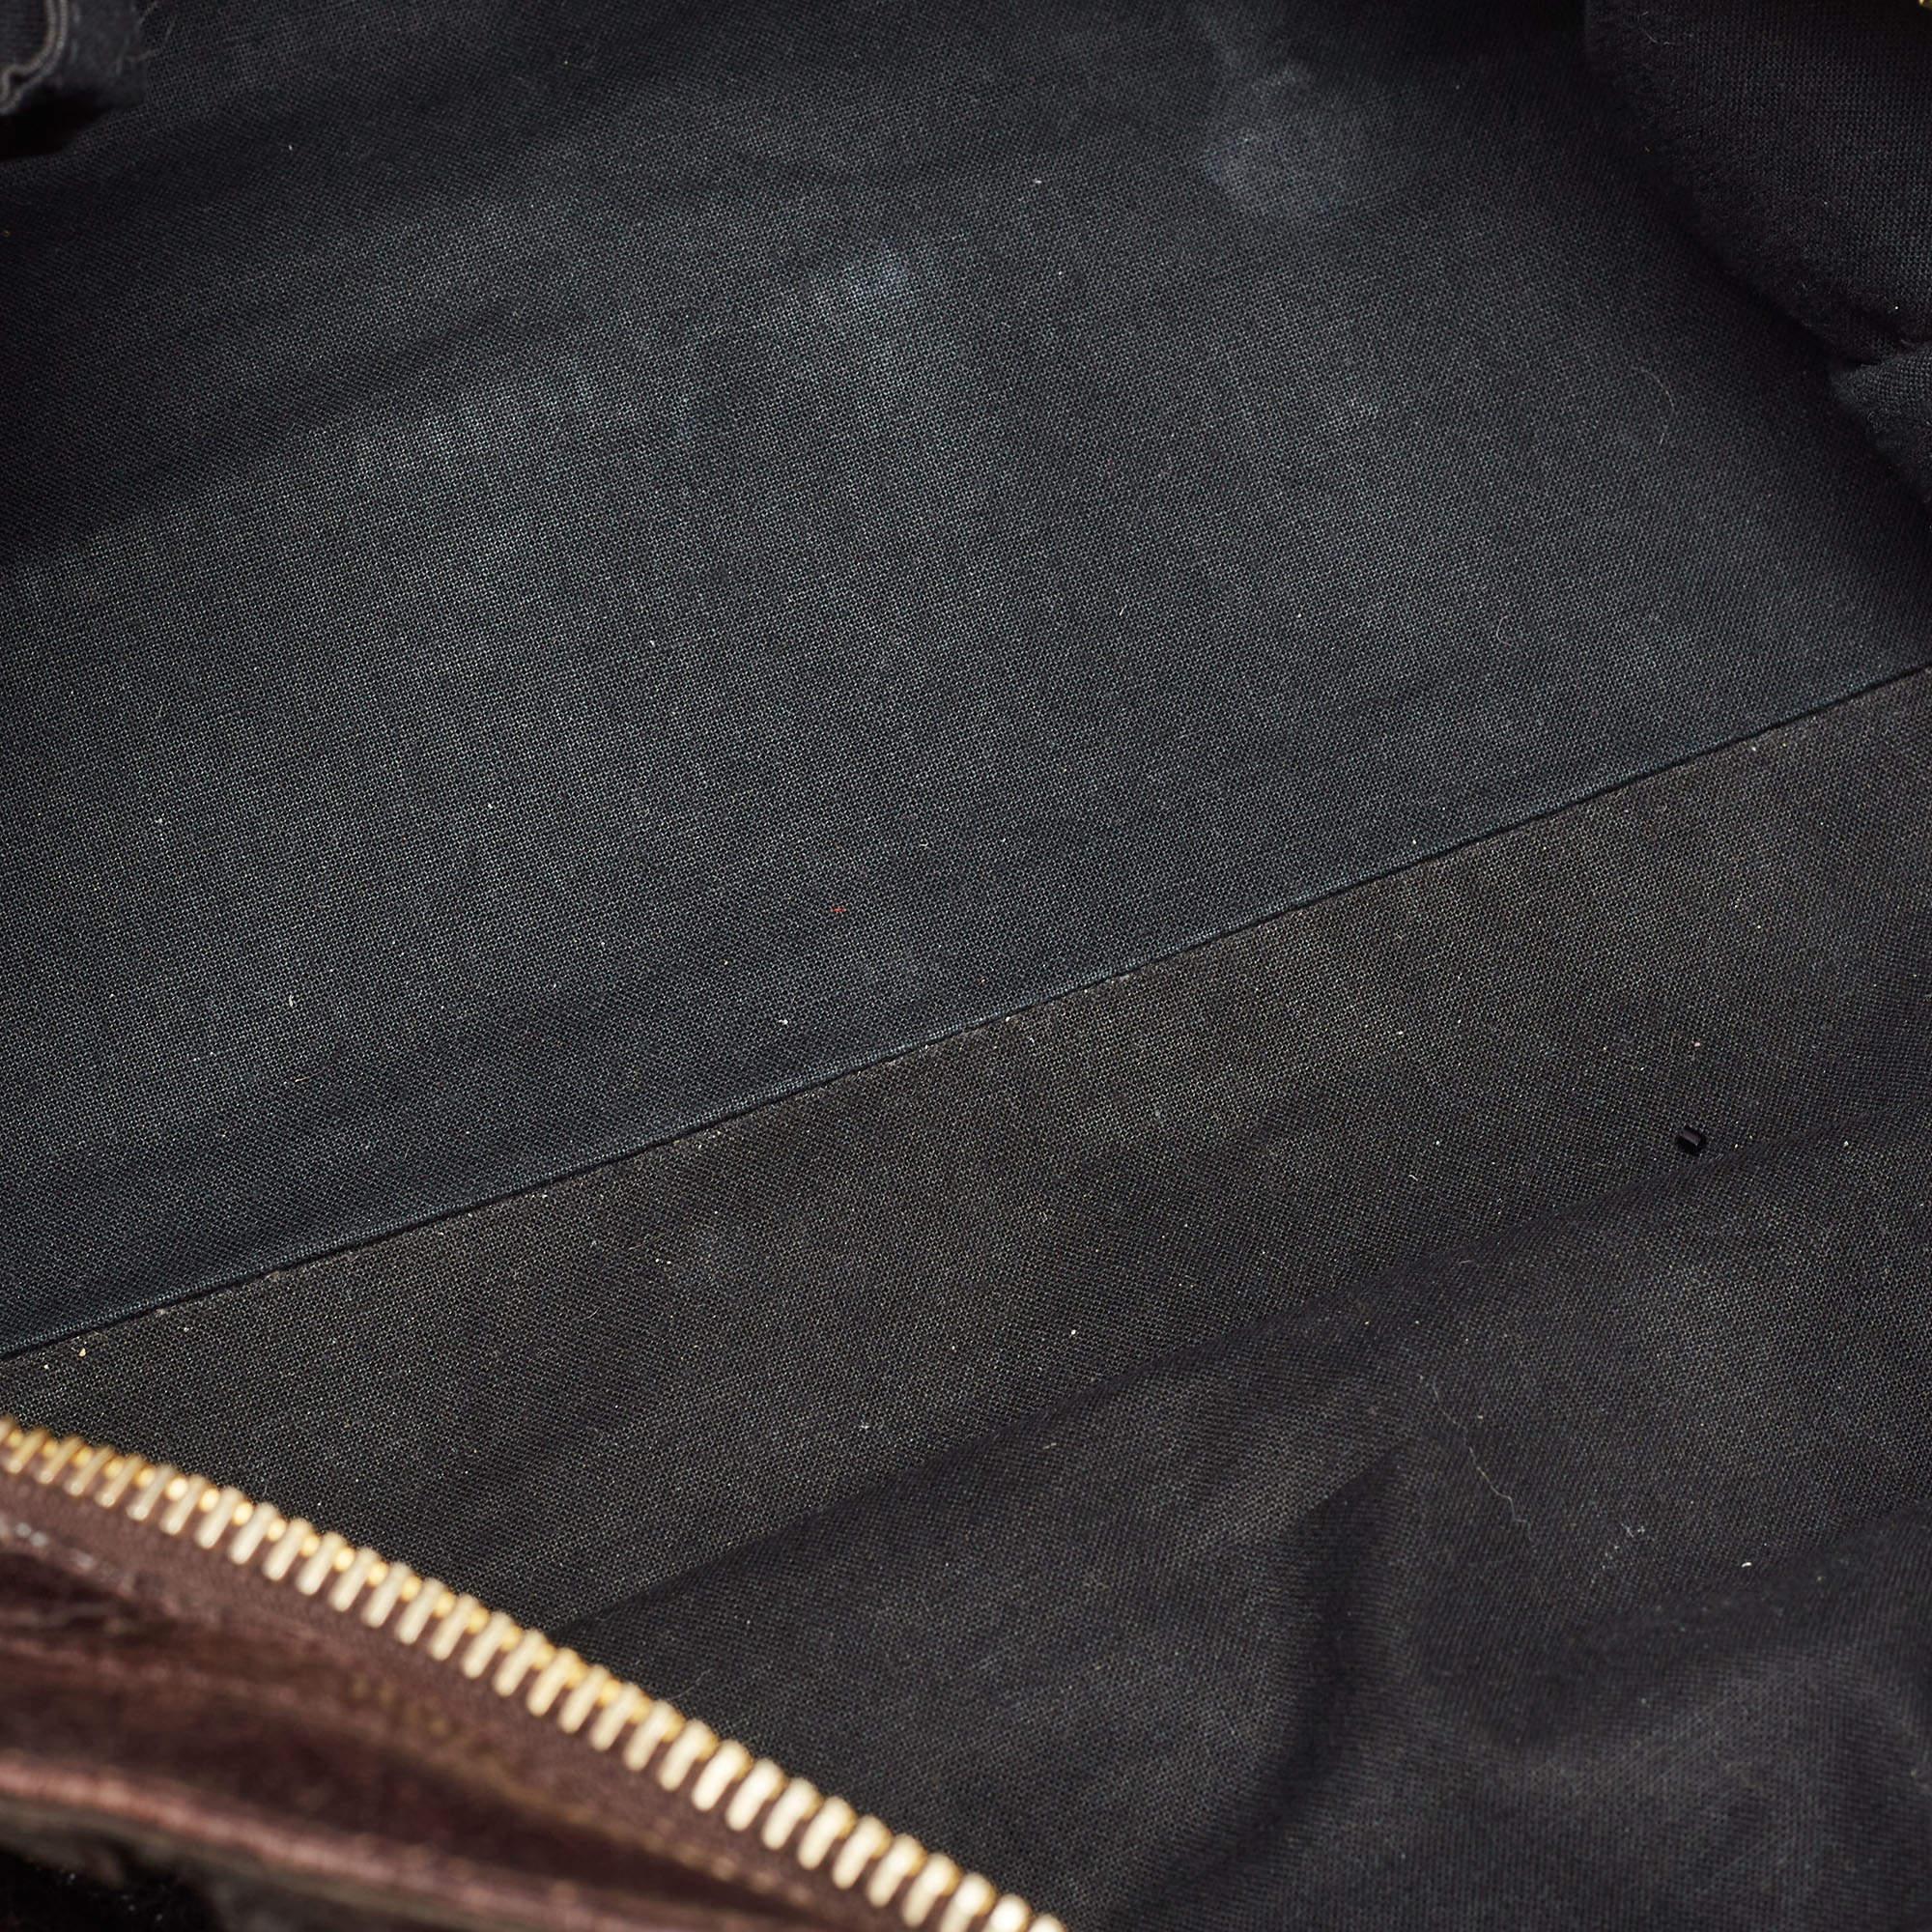 Balenciaga Dark Brown Leather GGH Part Time Bag 11